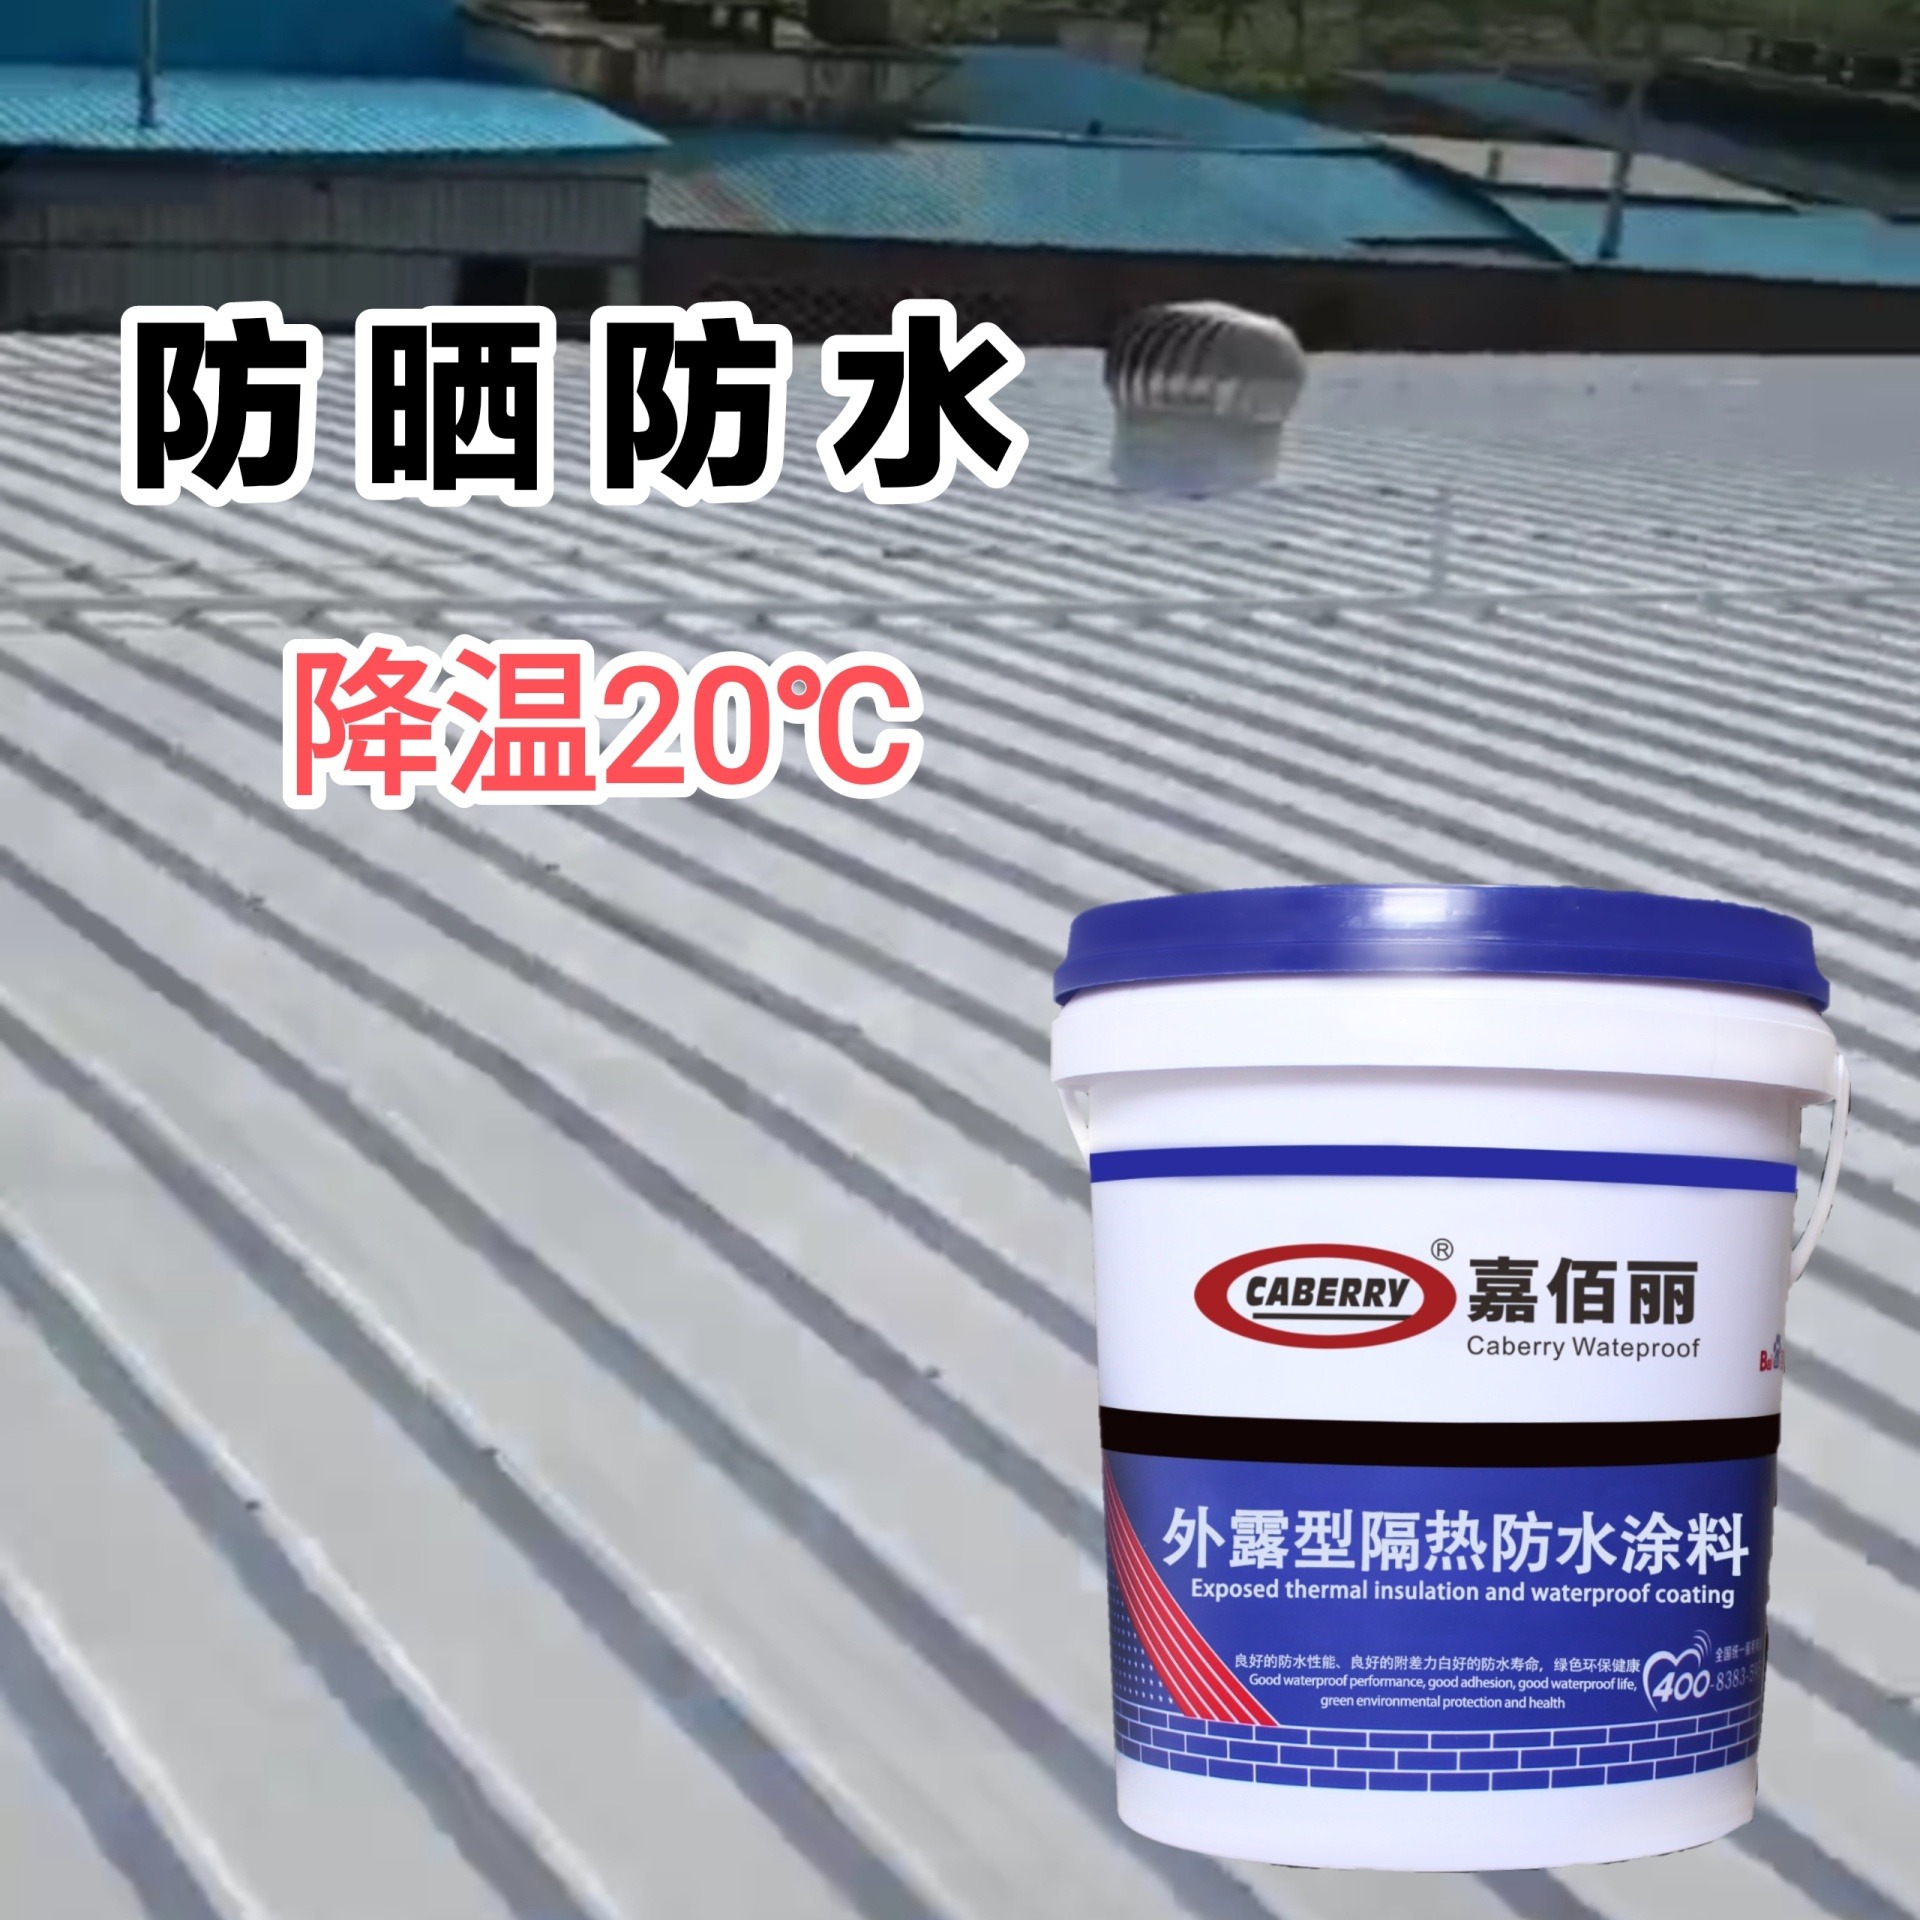 嘉佰丽新型涂料 隔热降温防水涂料 钢结构屋顶防水补漏材料图片